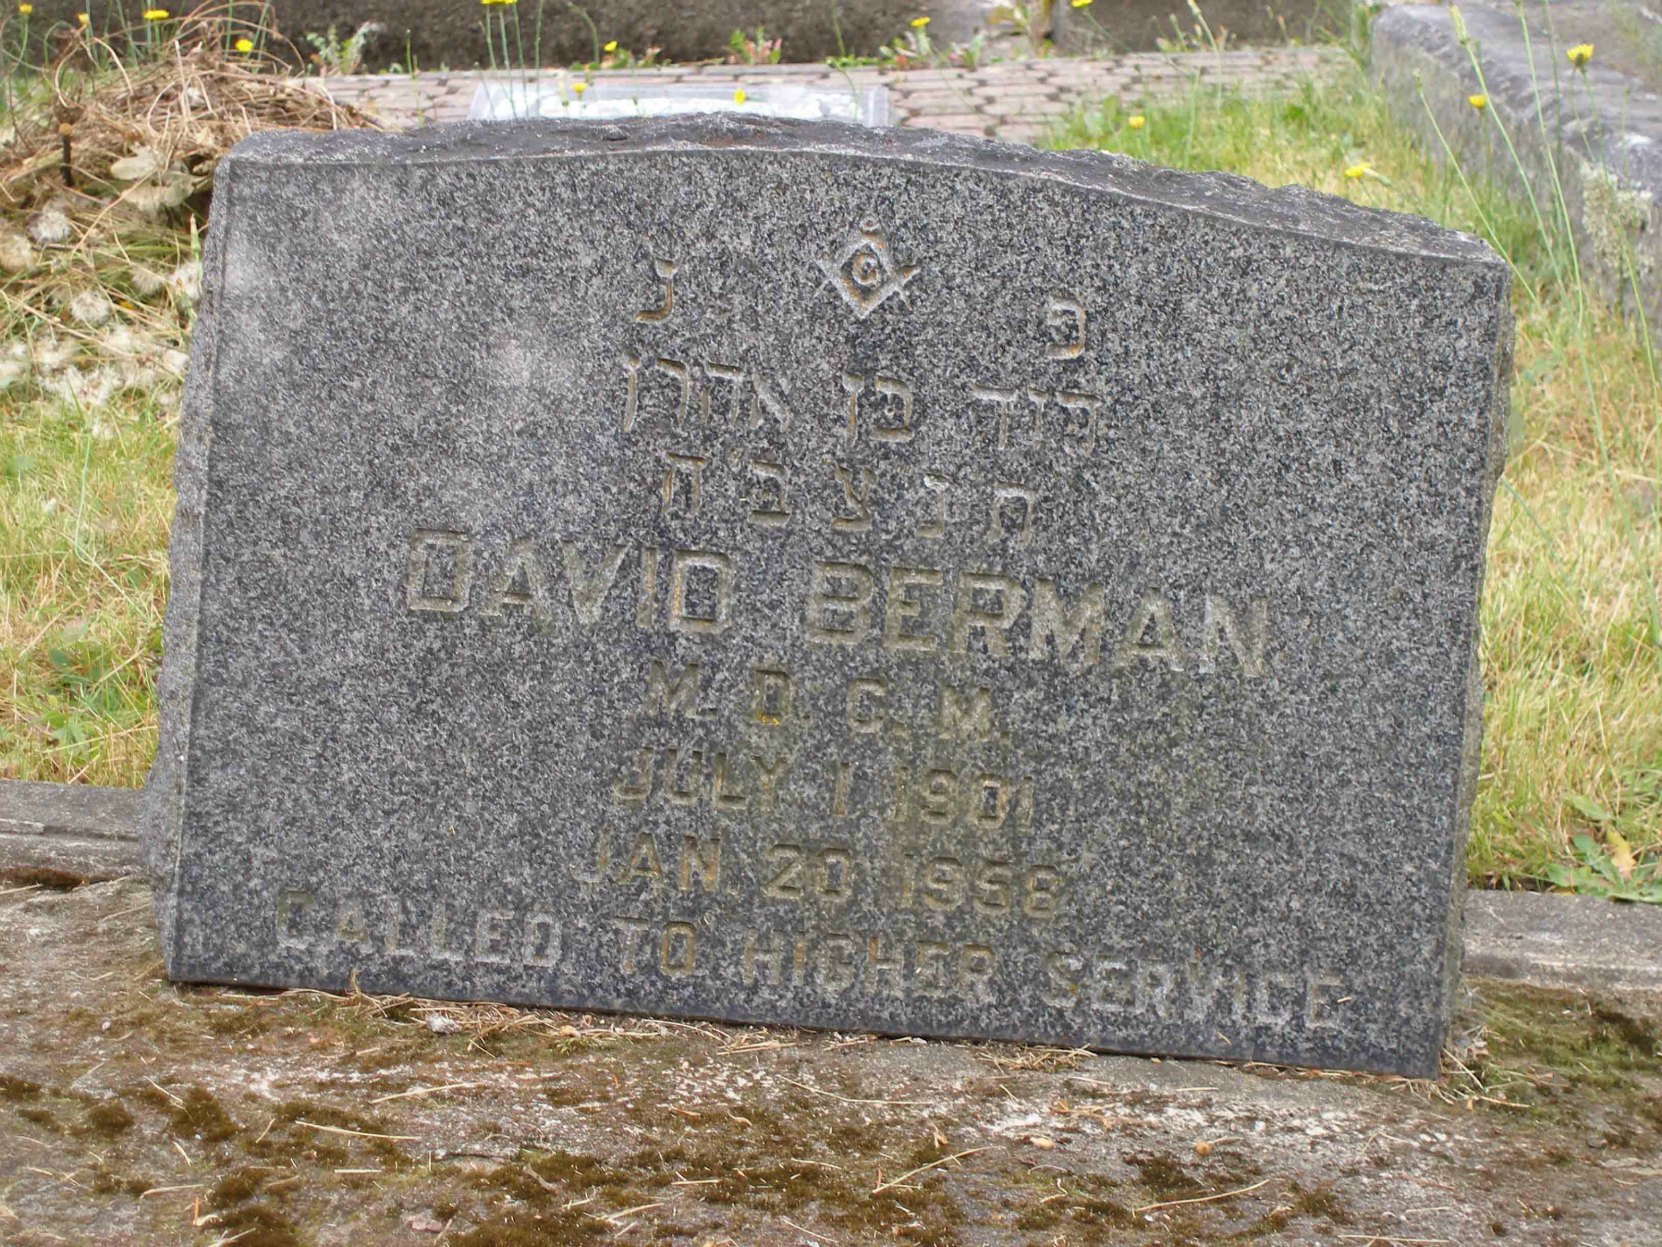 David Berman headstone inscription, Victoria Jewish Cemetery, Victoria, B.C.